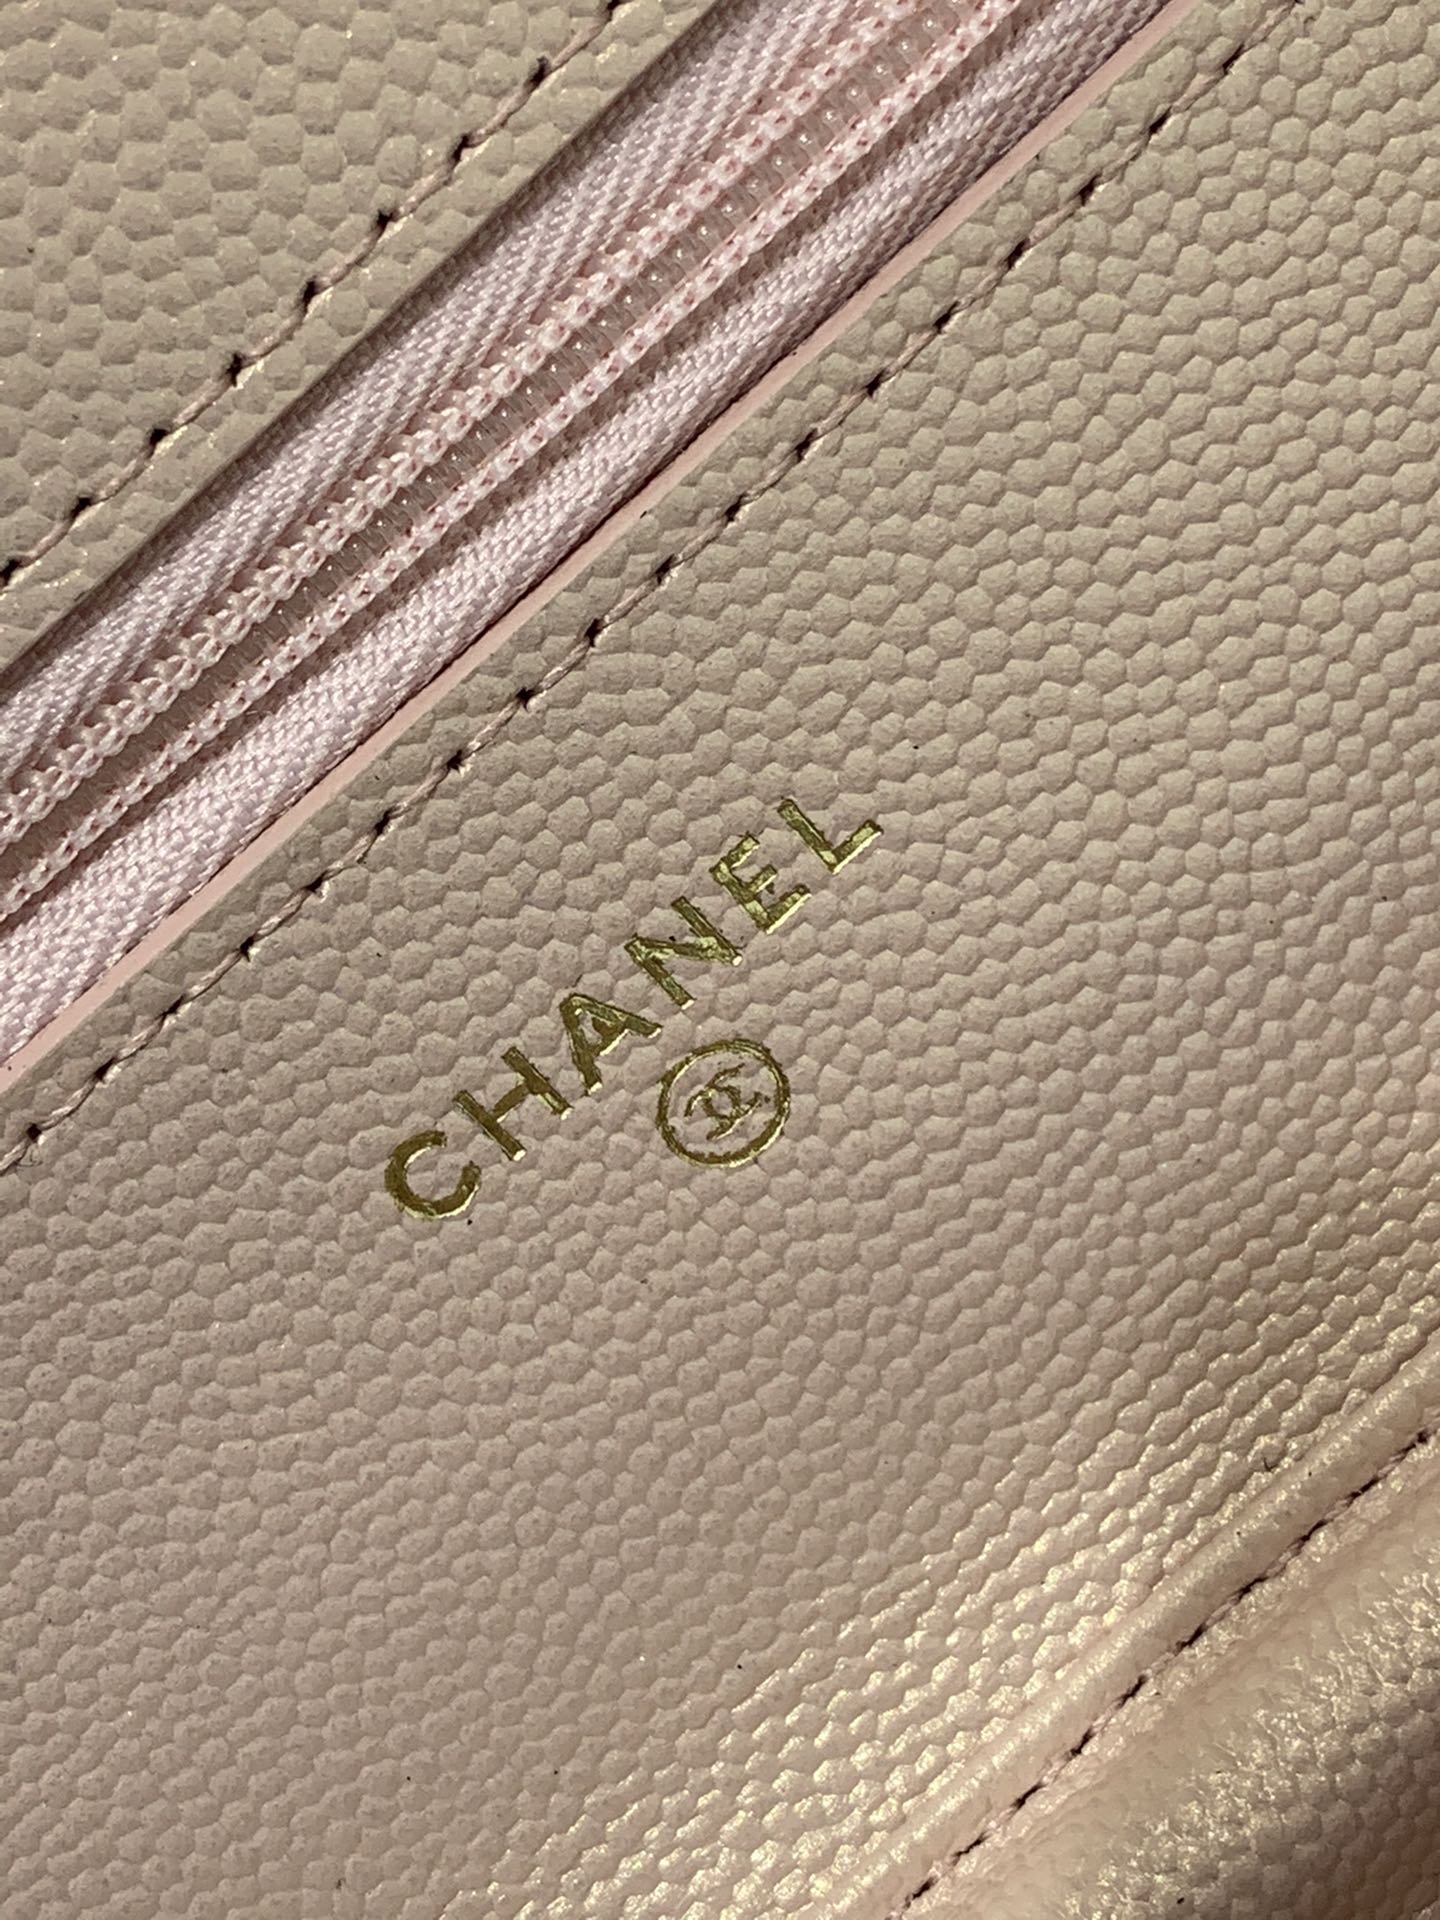 【按扣版】 Chanel Woc 新款变色woc 珠光皮 不同光线变换出炫彩 19.5-13-3.5cm